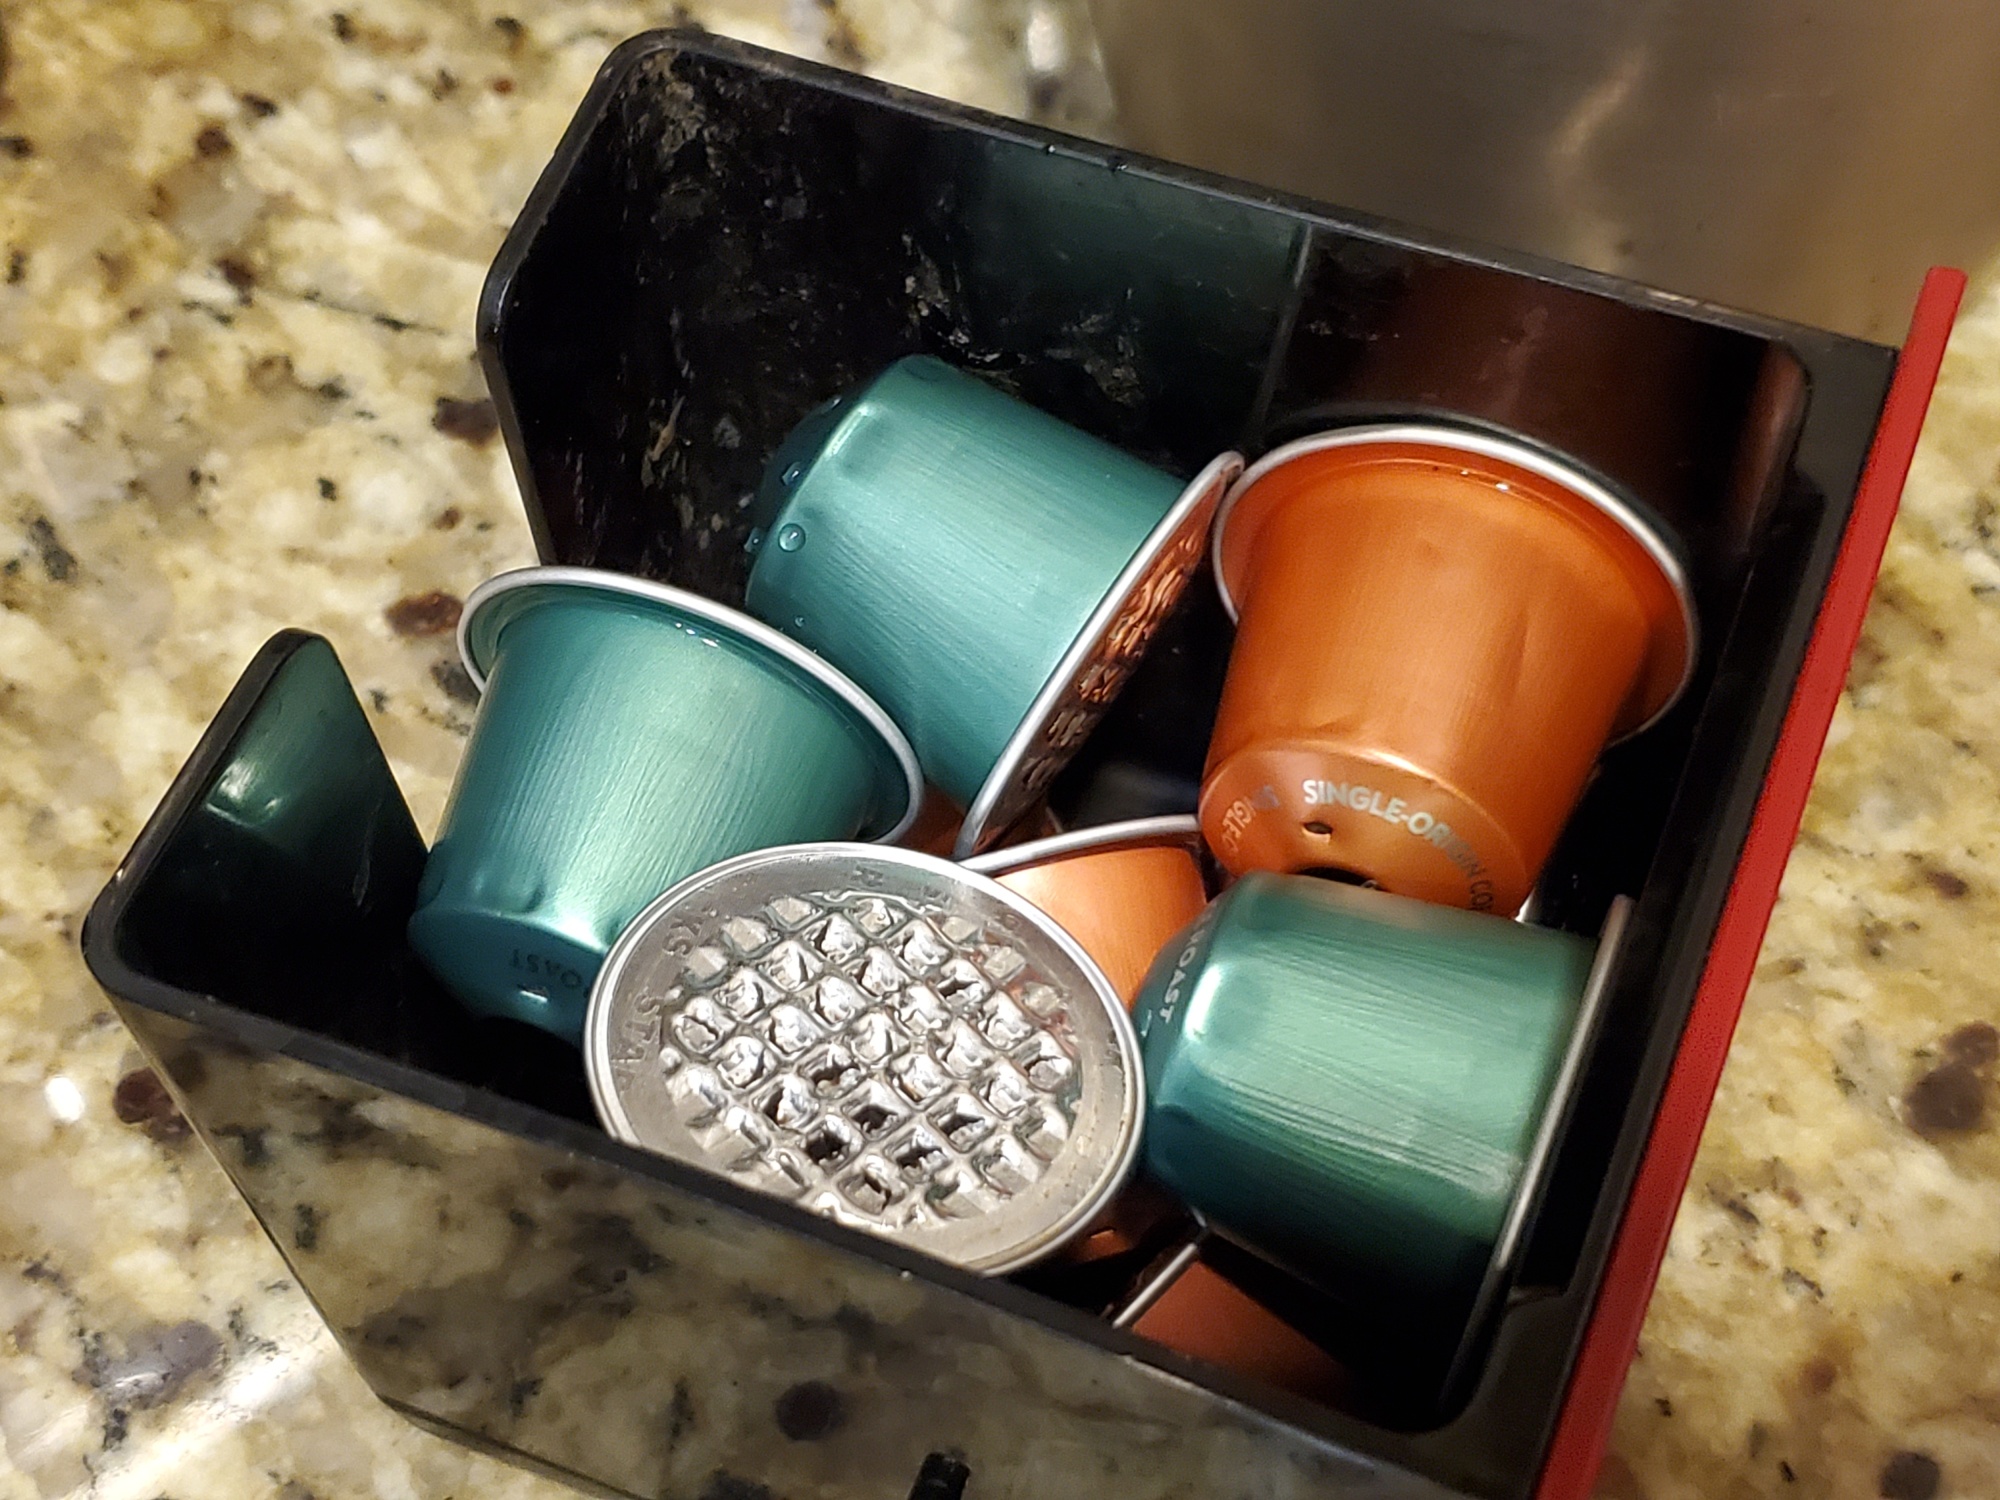 Used Nespresso single-serve coffee pods.